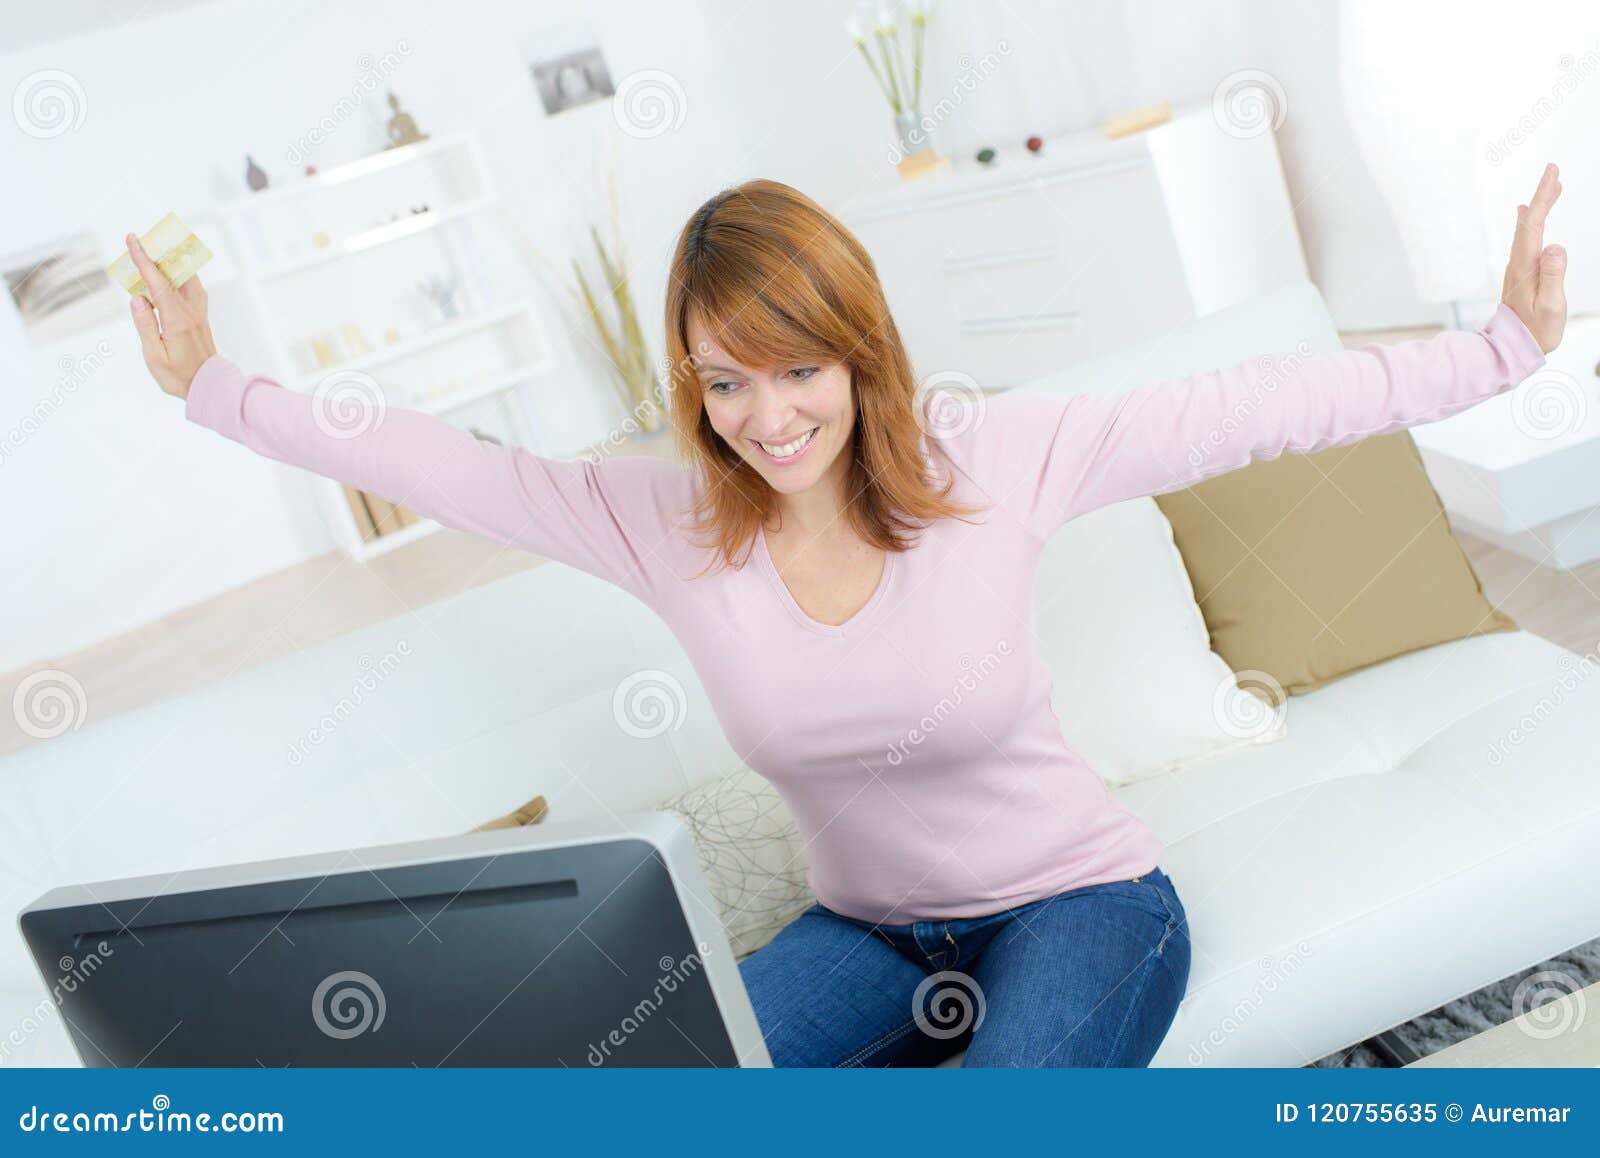 joyous woman holding bankcard and looking at computer screen